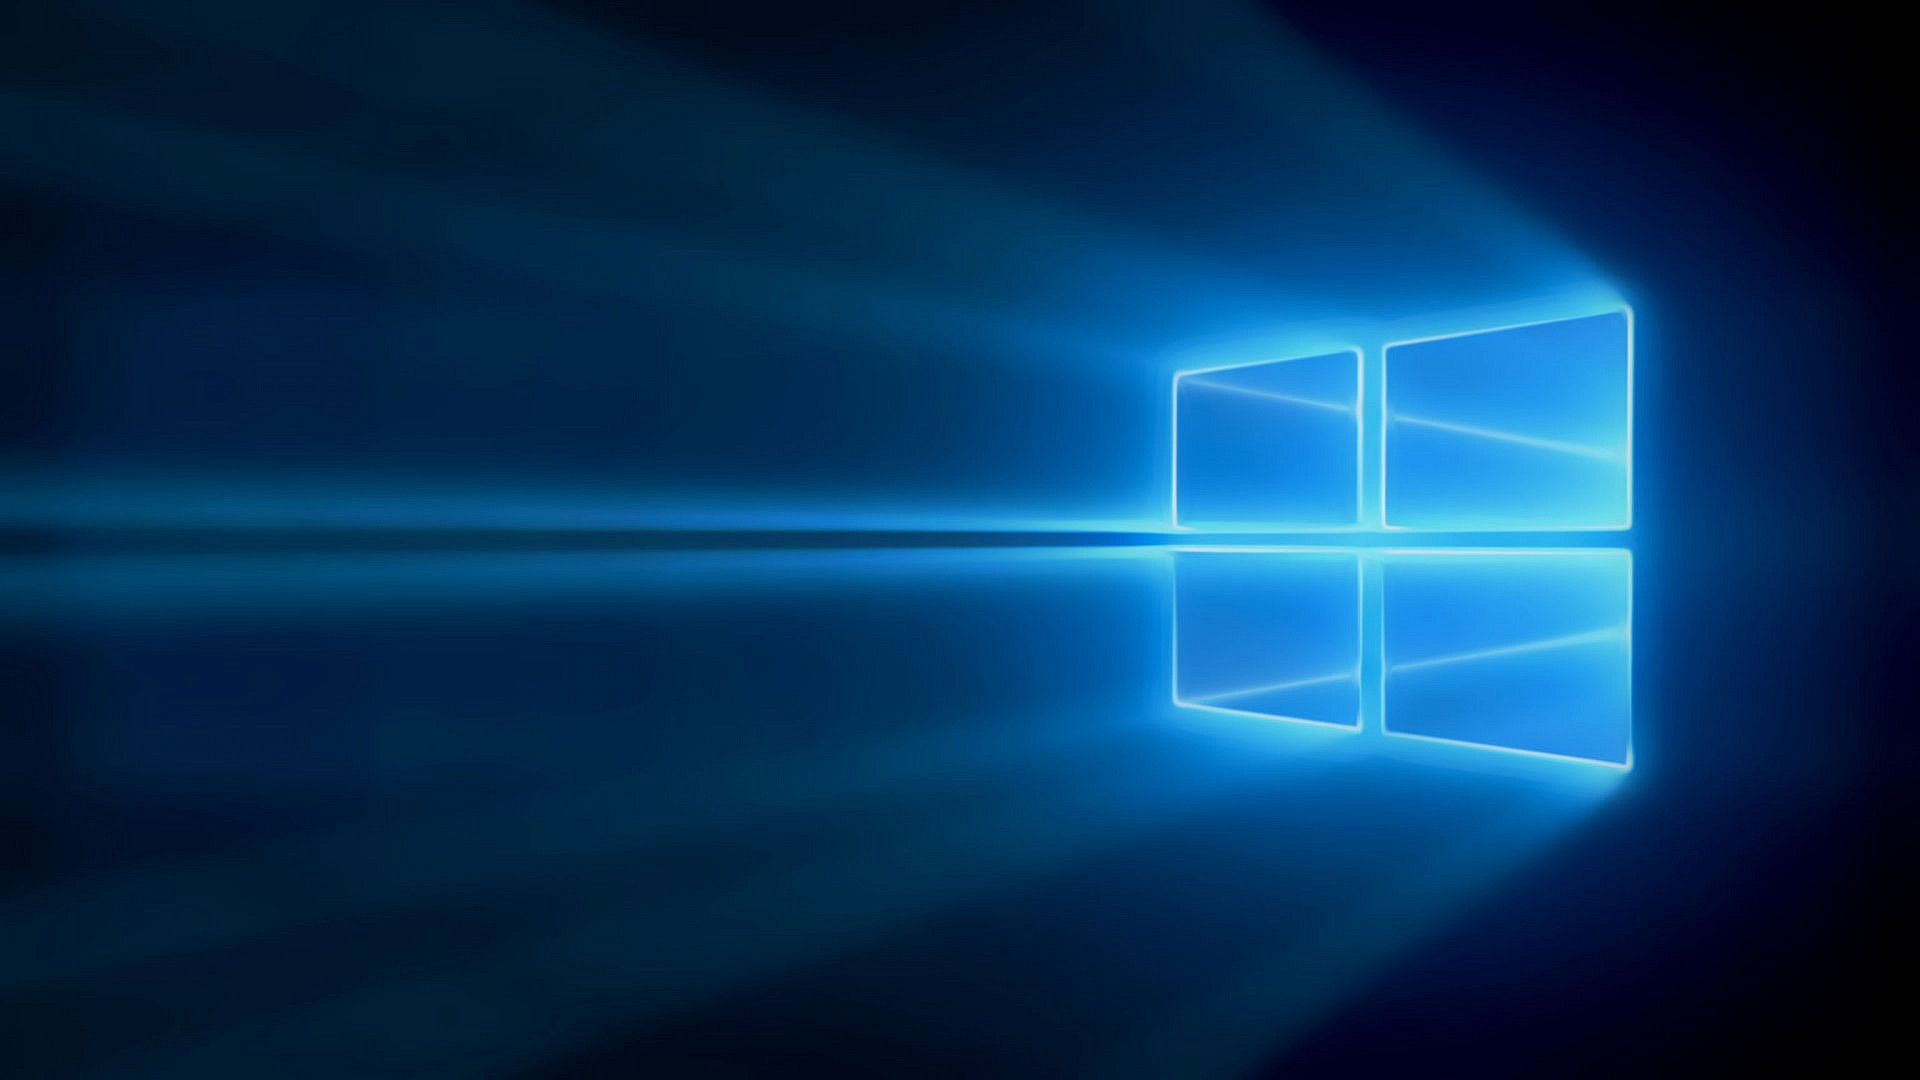 Microsoft ปรับแล้ว!!! เปลี่ยนวิธีปฏิเสธการอัพเกรด Windows 10 ให้ชัดเจนขึ้น